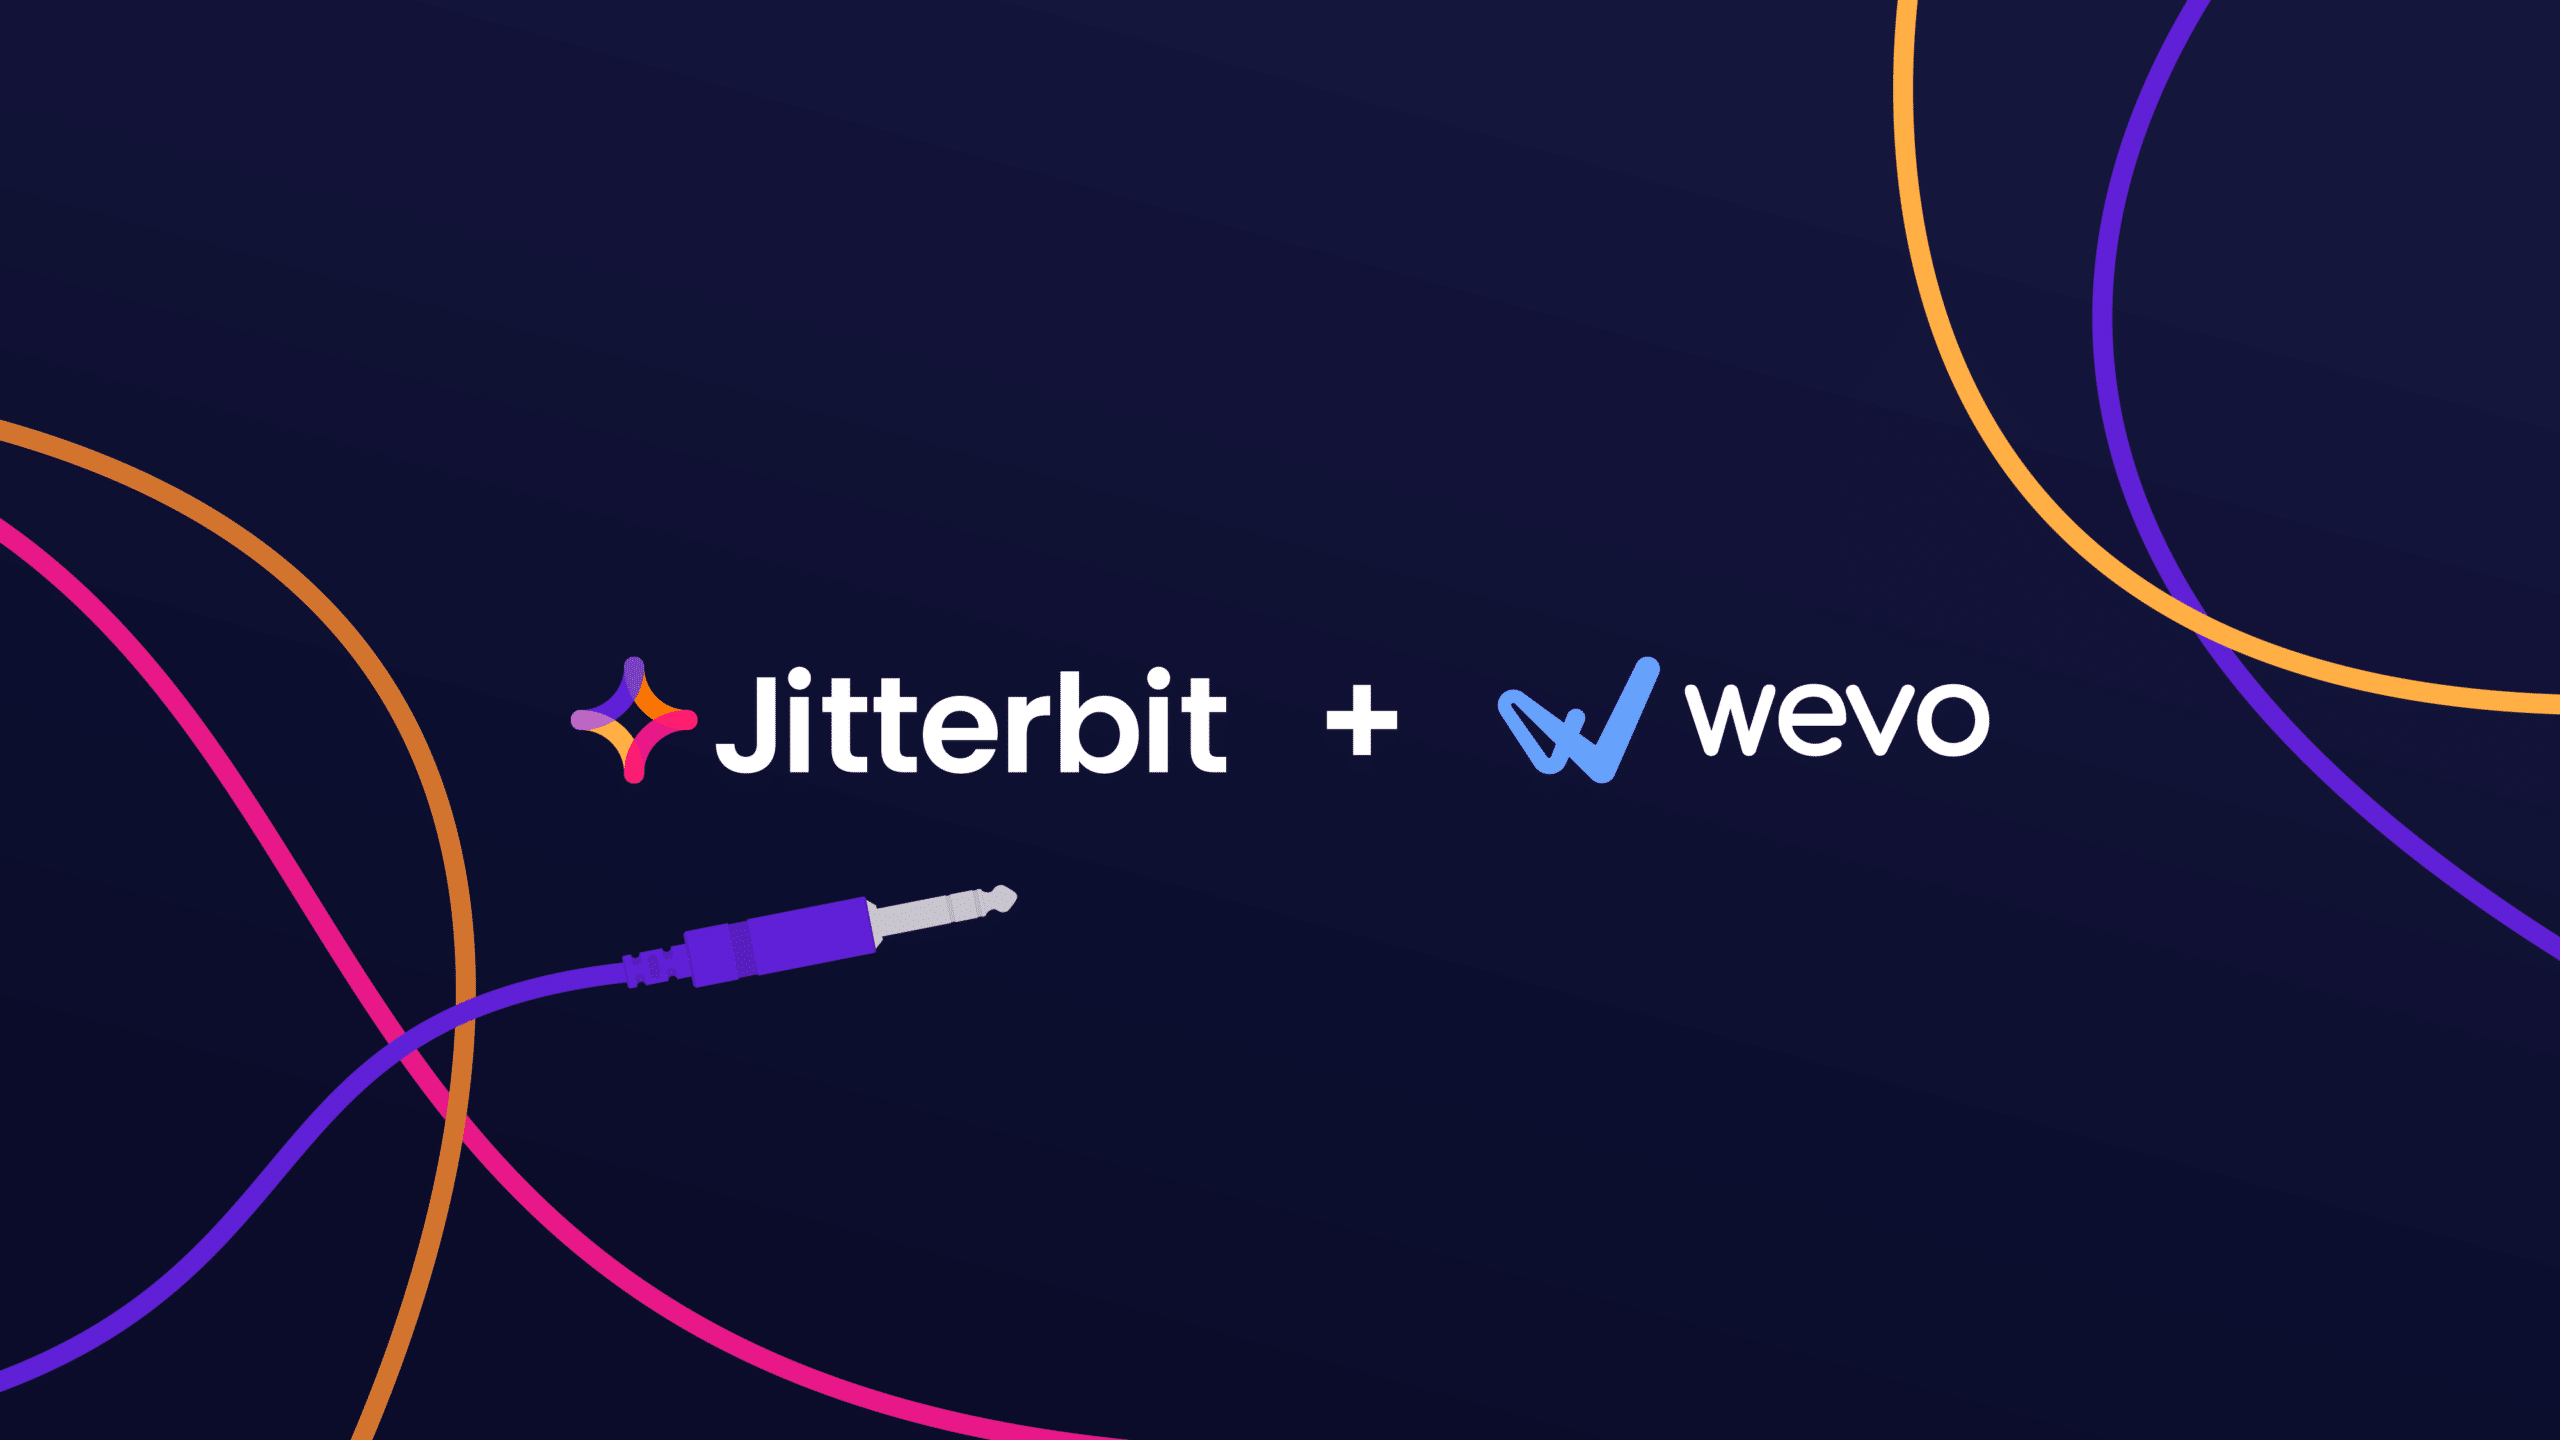 Press Release - Wevo is Jitterbit